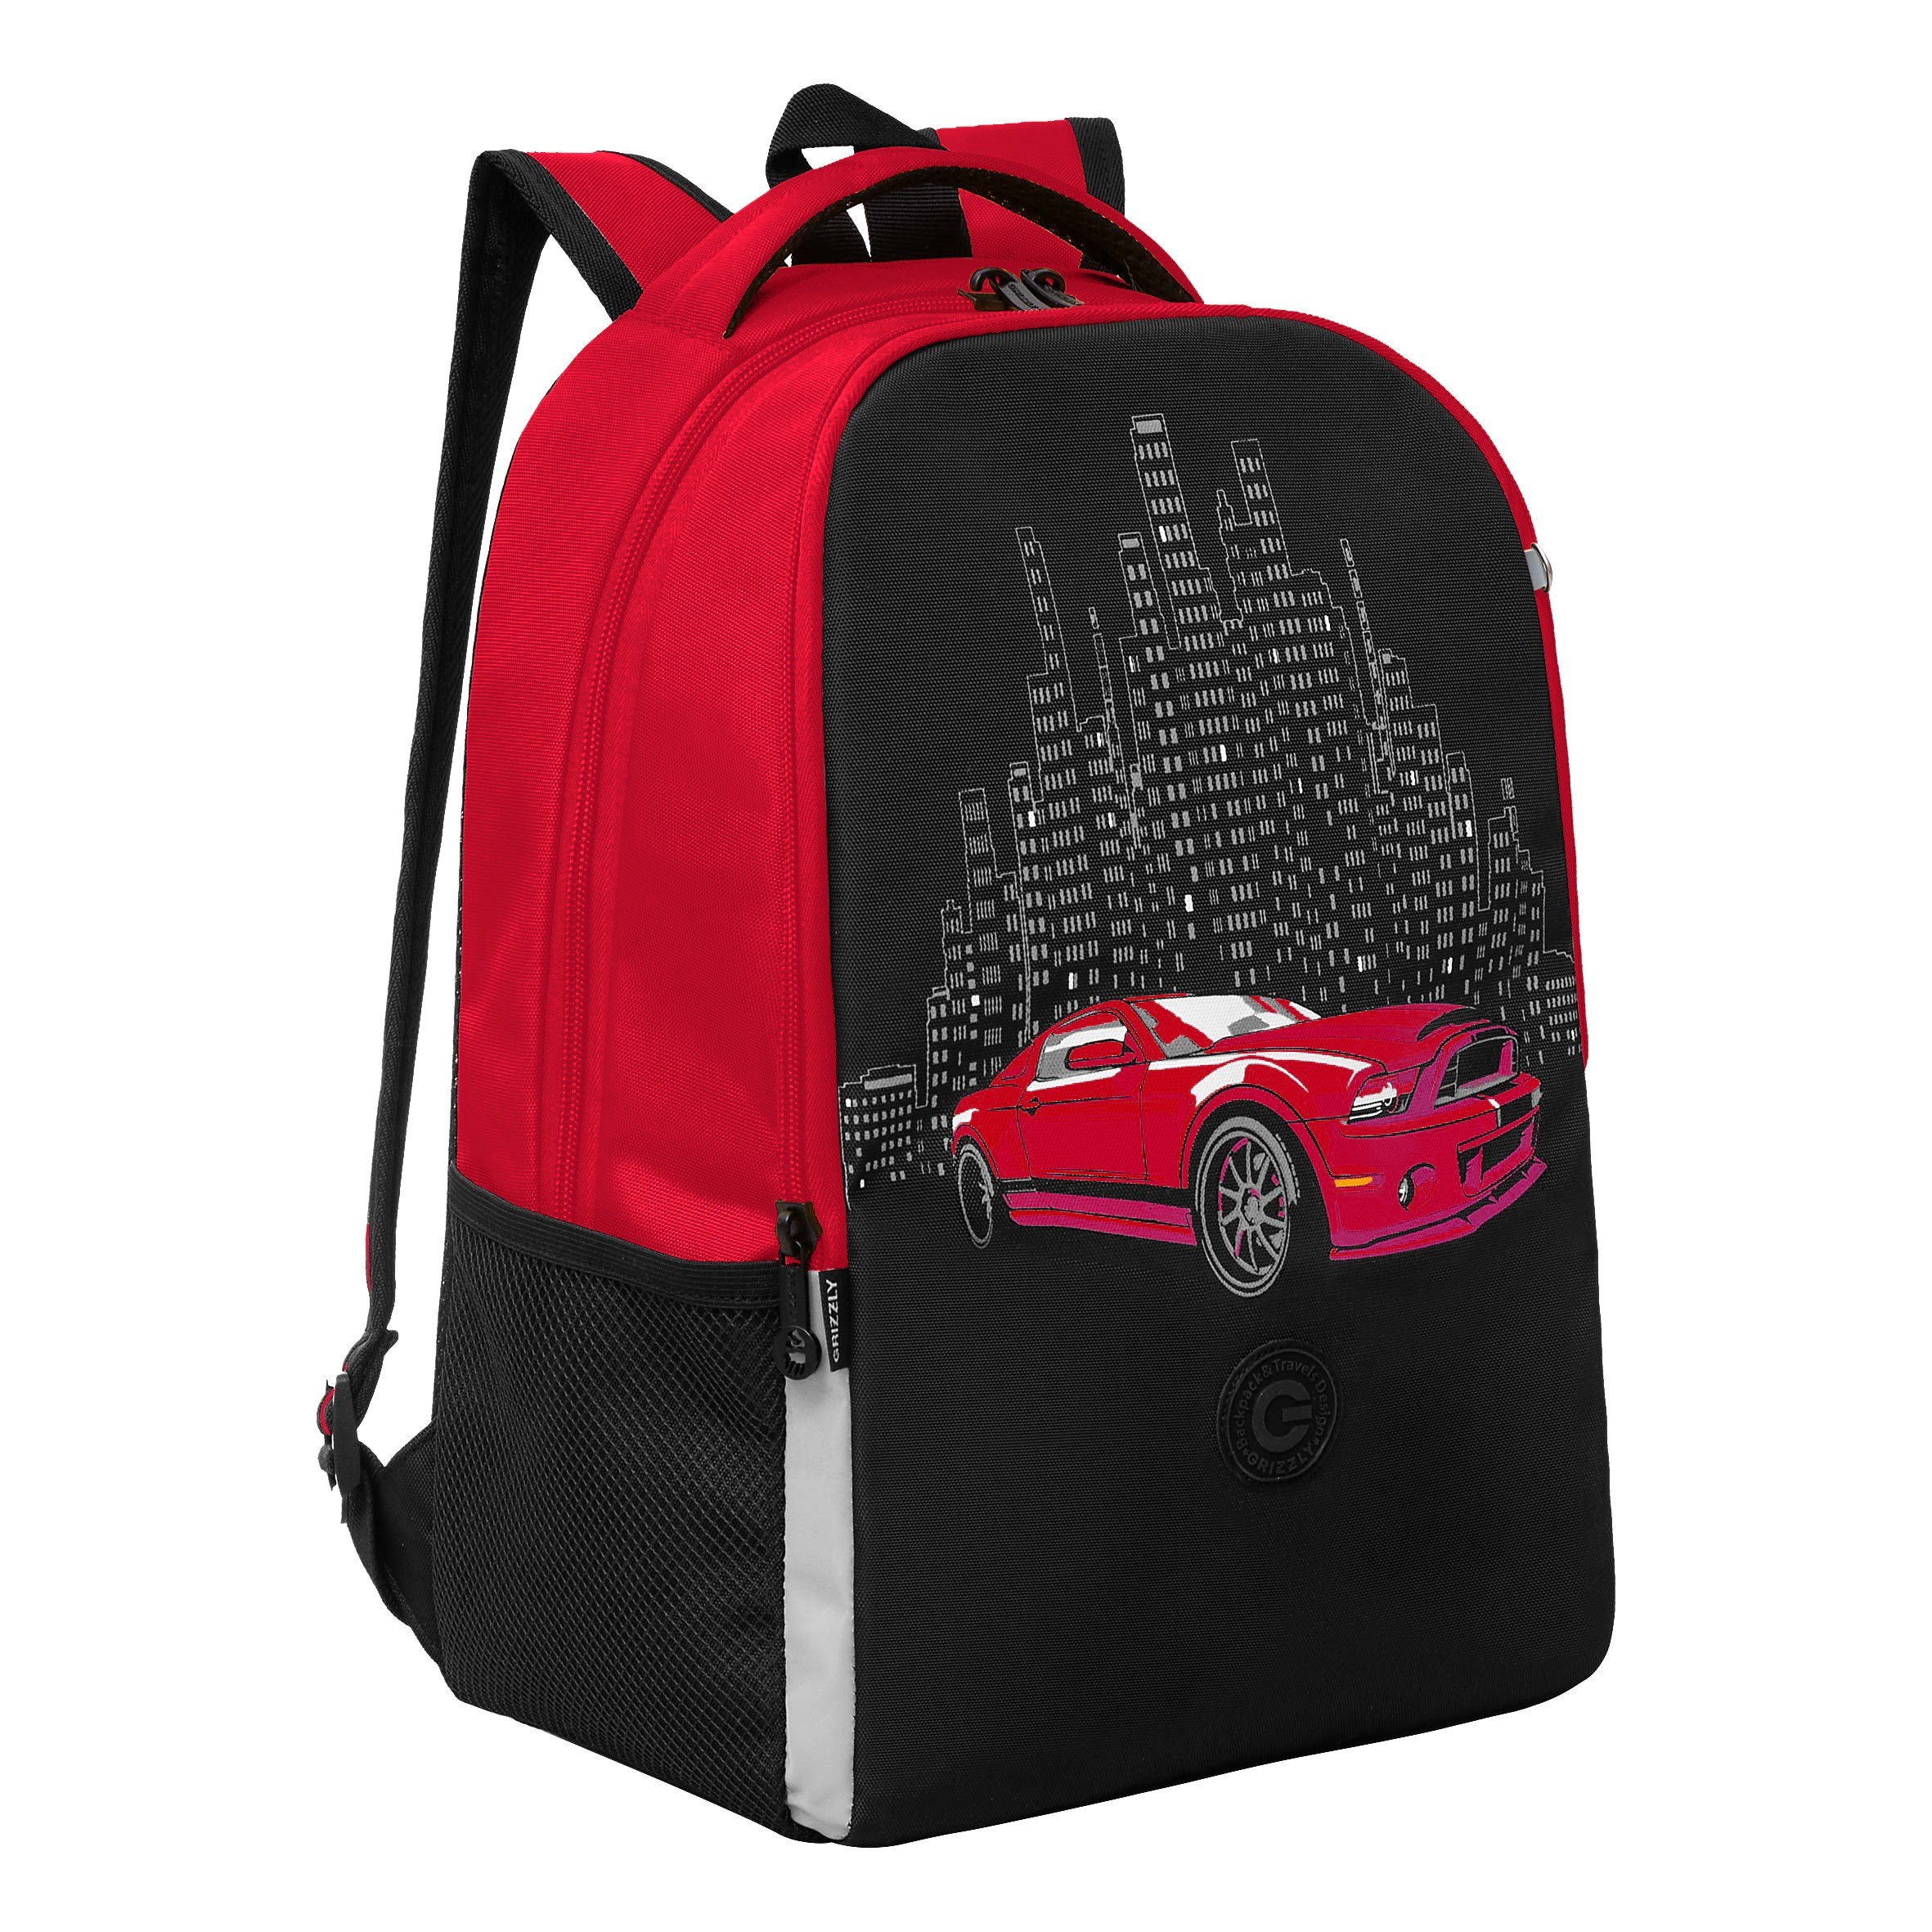 Рюкзак школьный GRIZZLY легкий с жесткой спинкой, 2 отделения RB-451-8/2 черный, красный